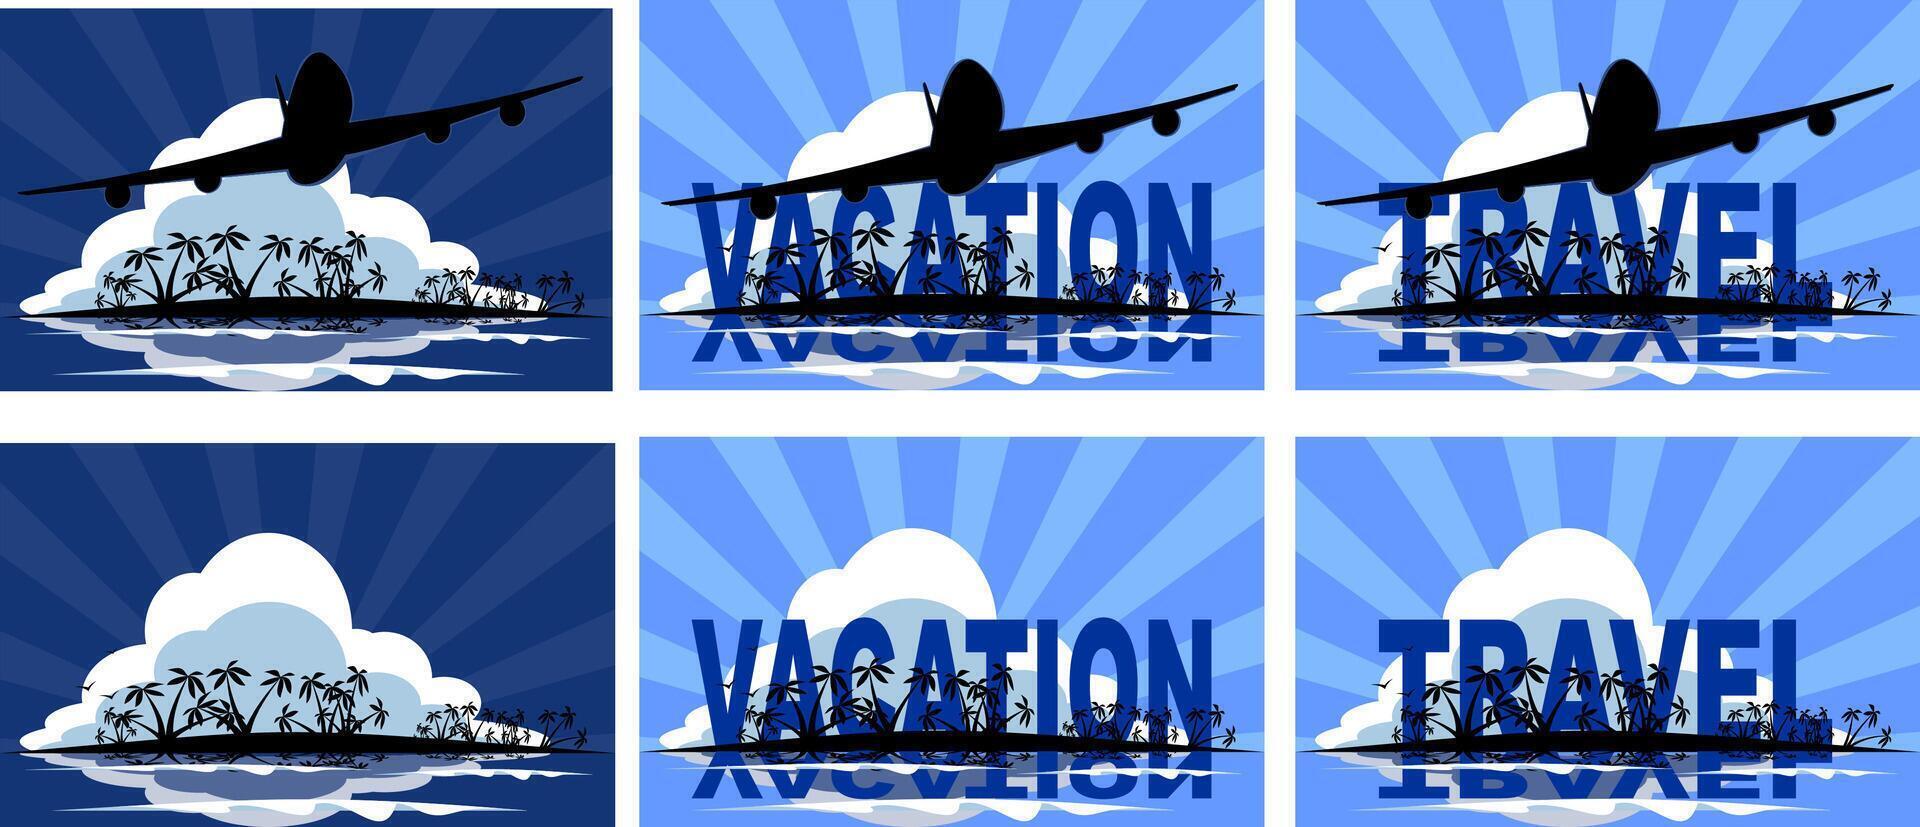 tropicale viaggio e vacanza design illustrazione per manifesto o annuncio pubblicitario vettore